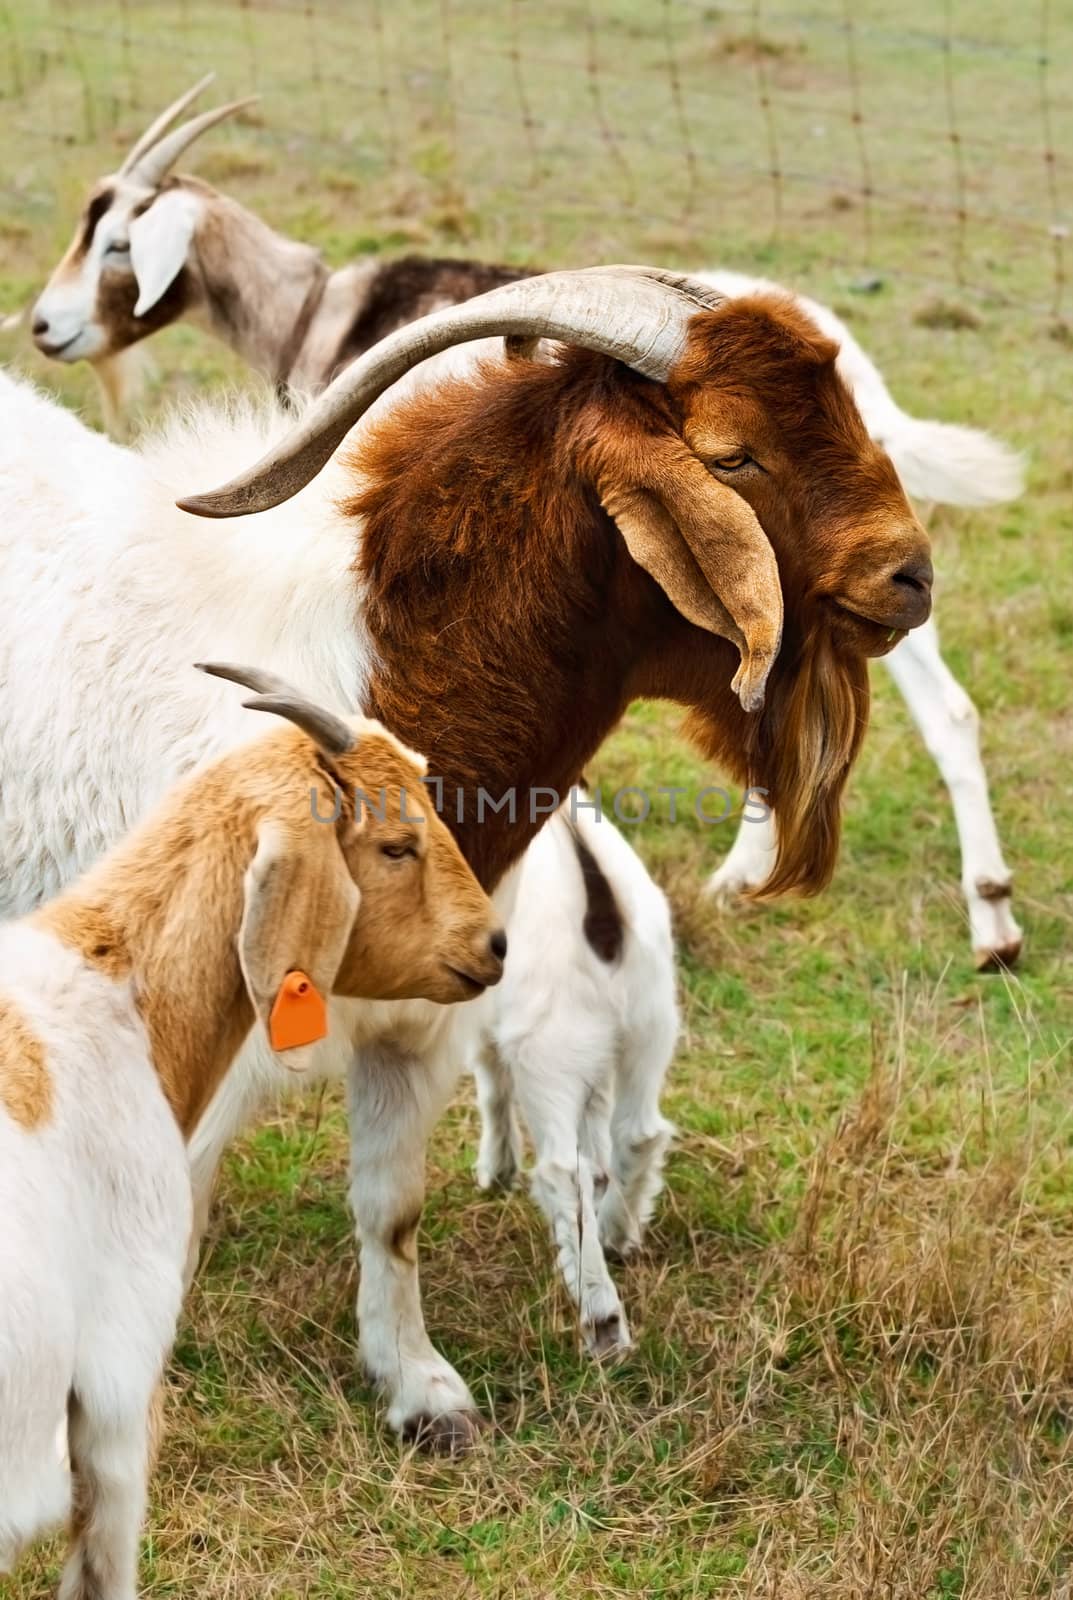 Billy goat with nanny goats by sherj